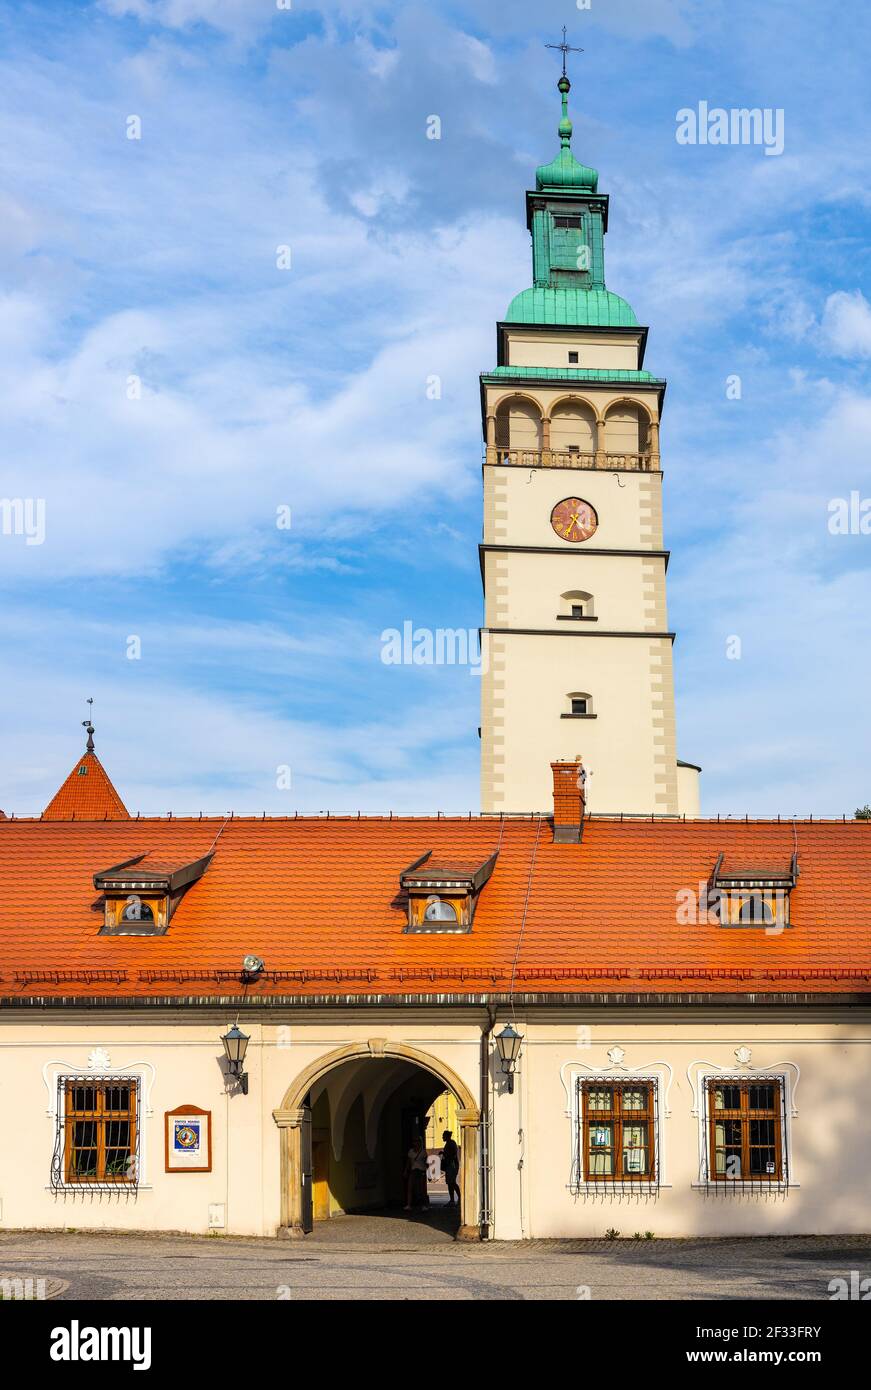 Zywiec, Polen - 30. August 2020: Haupttor zum Habsburger Palast, zum Alten Schloss und zum Zywiec Schlosspark mit Domturm im historischen Stadtzentrum Stockfoto